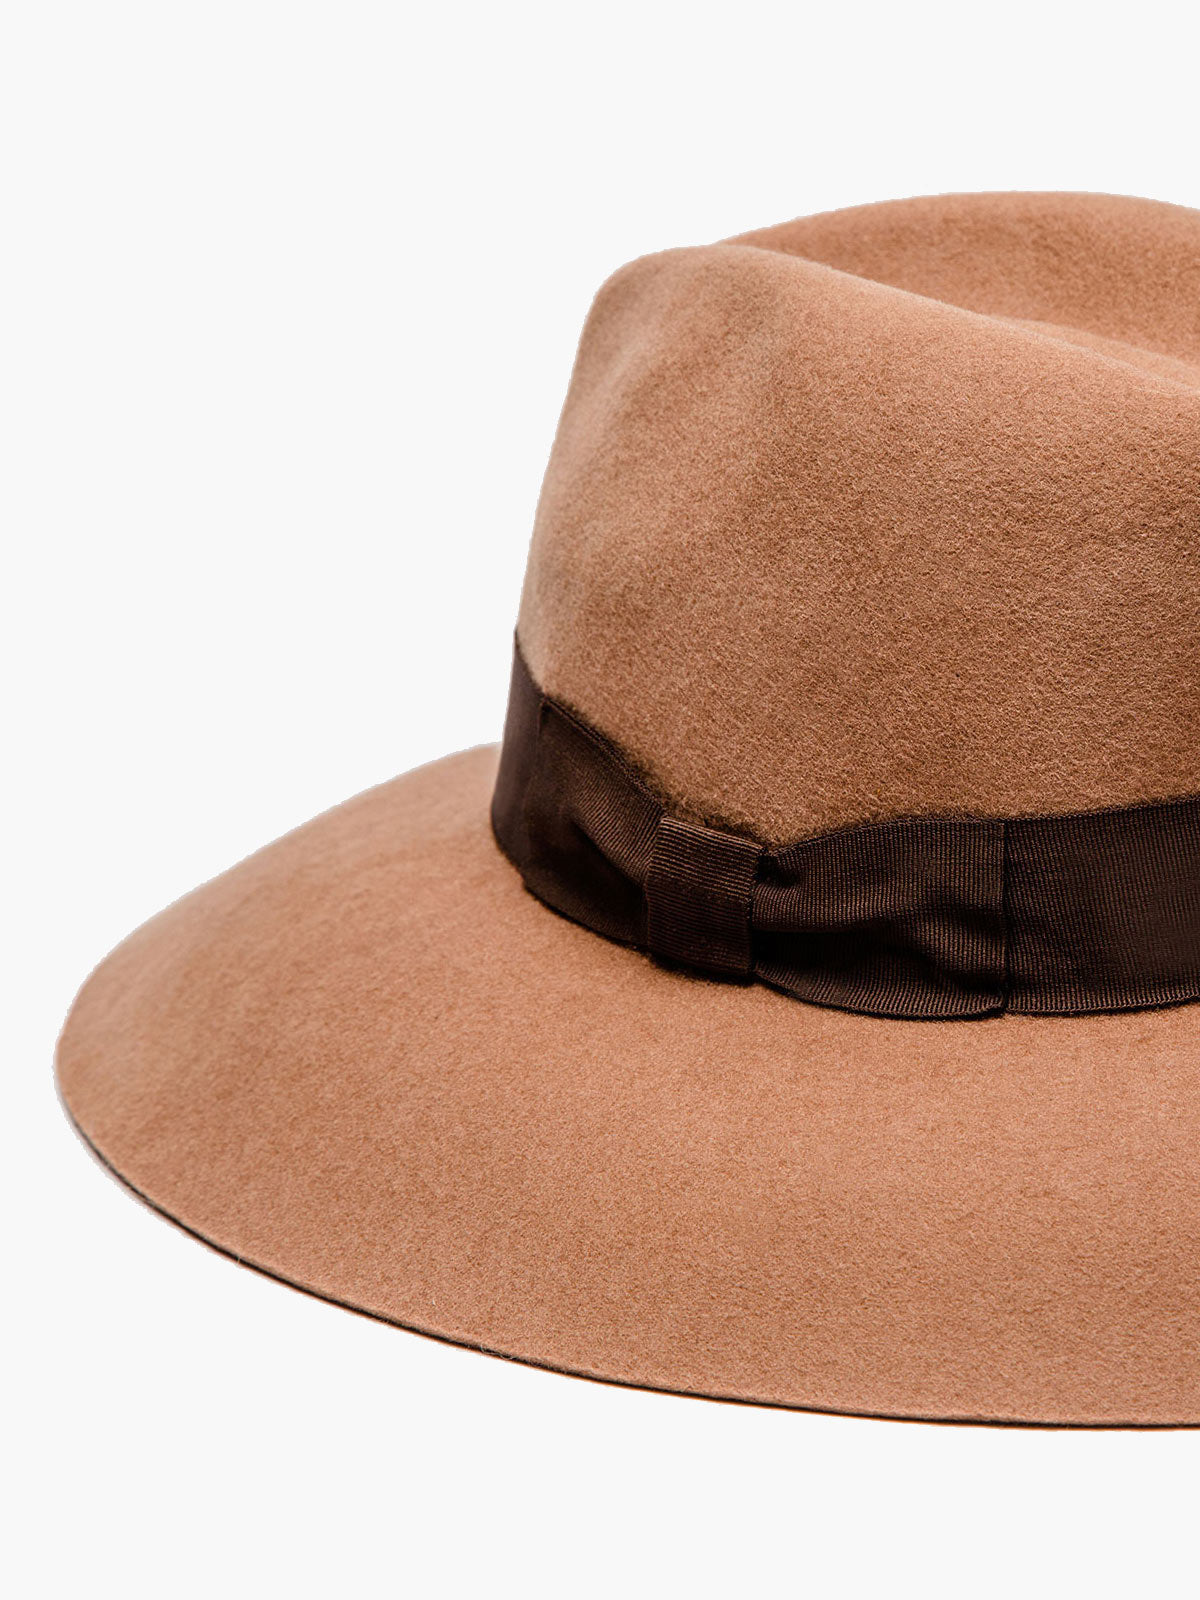 Felt Shade Hat | Camel - Fashionkind